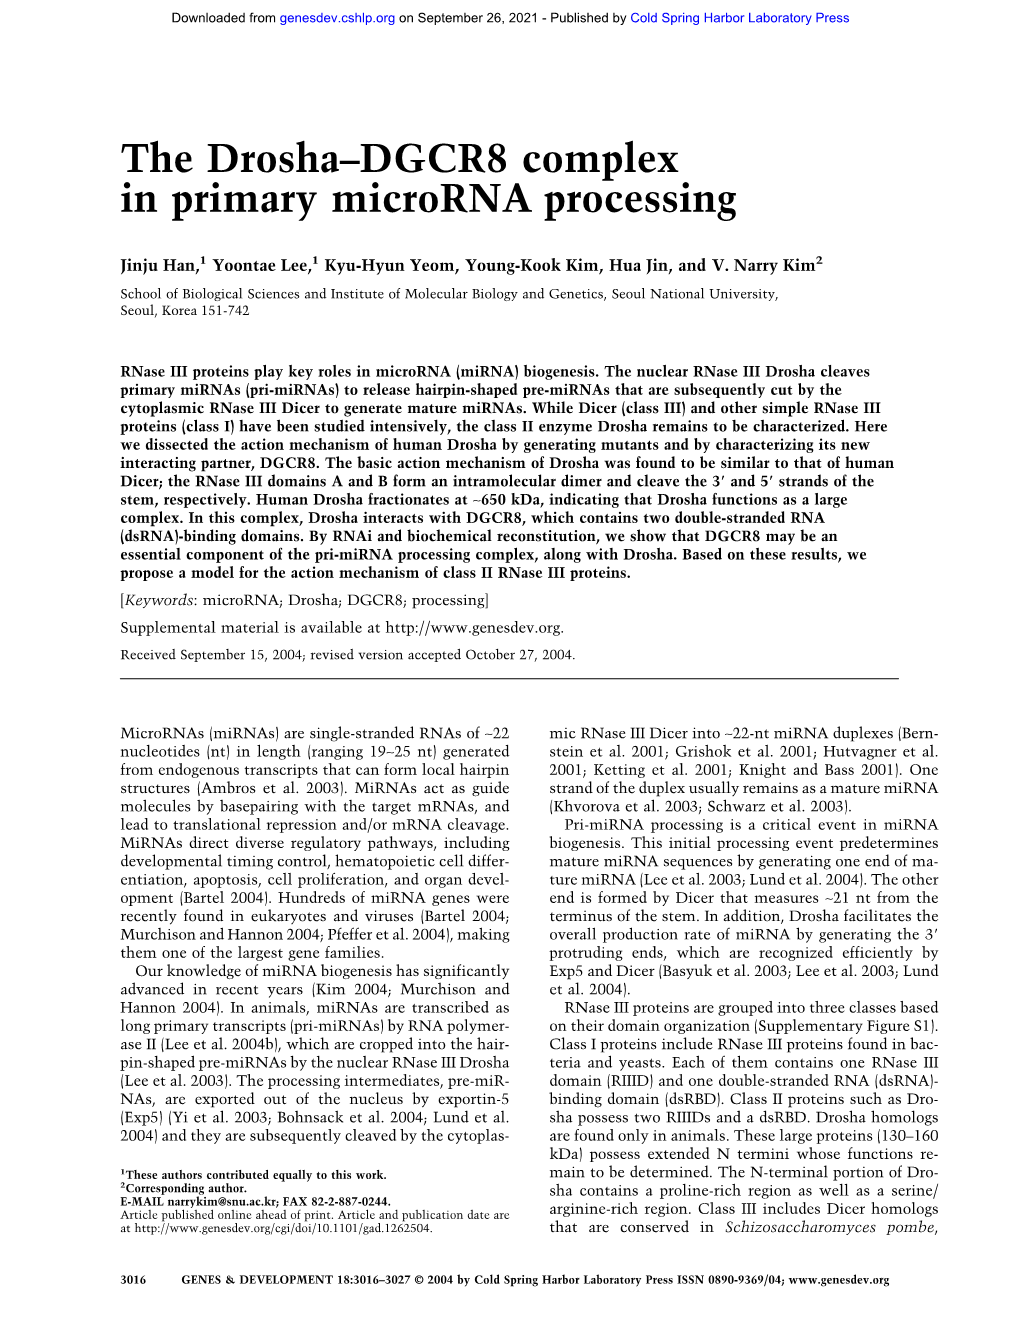 The Drosha–DGCR8 Complex in Primary Microrna Processing